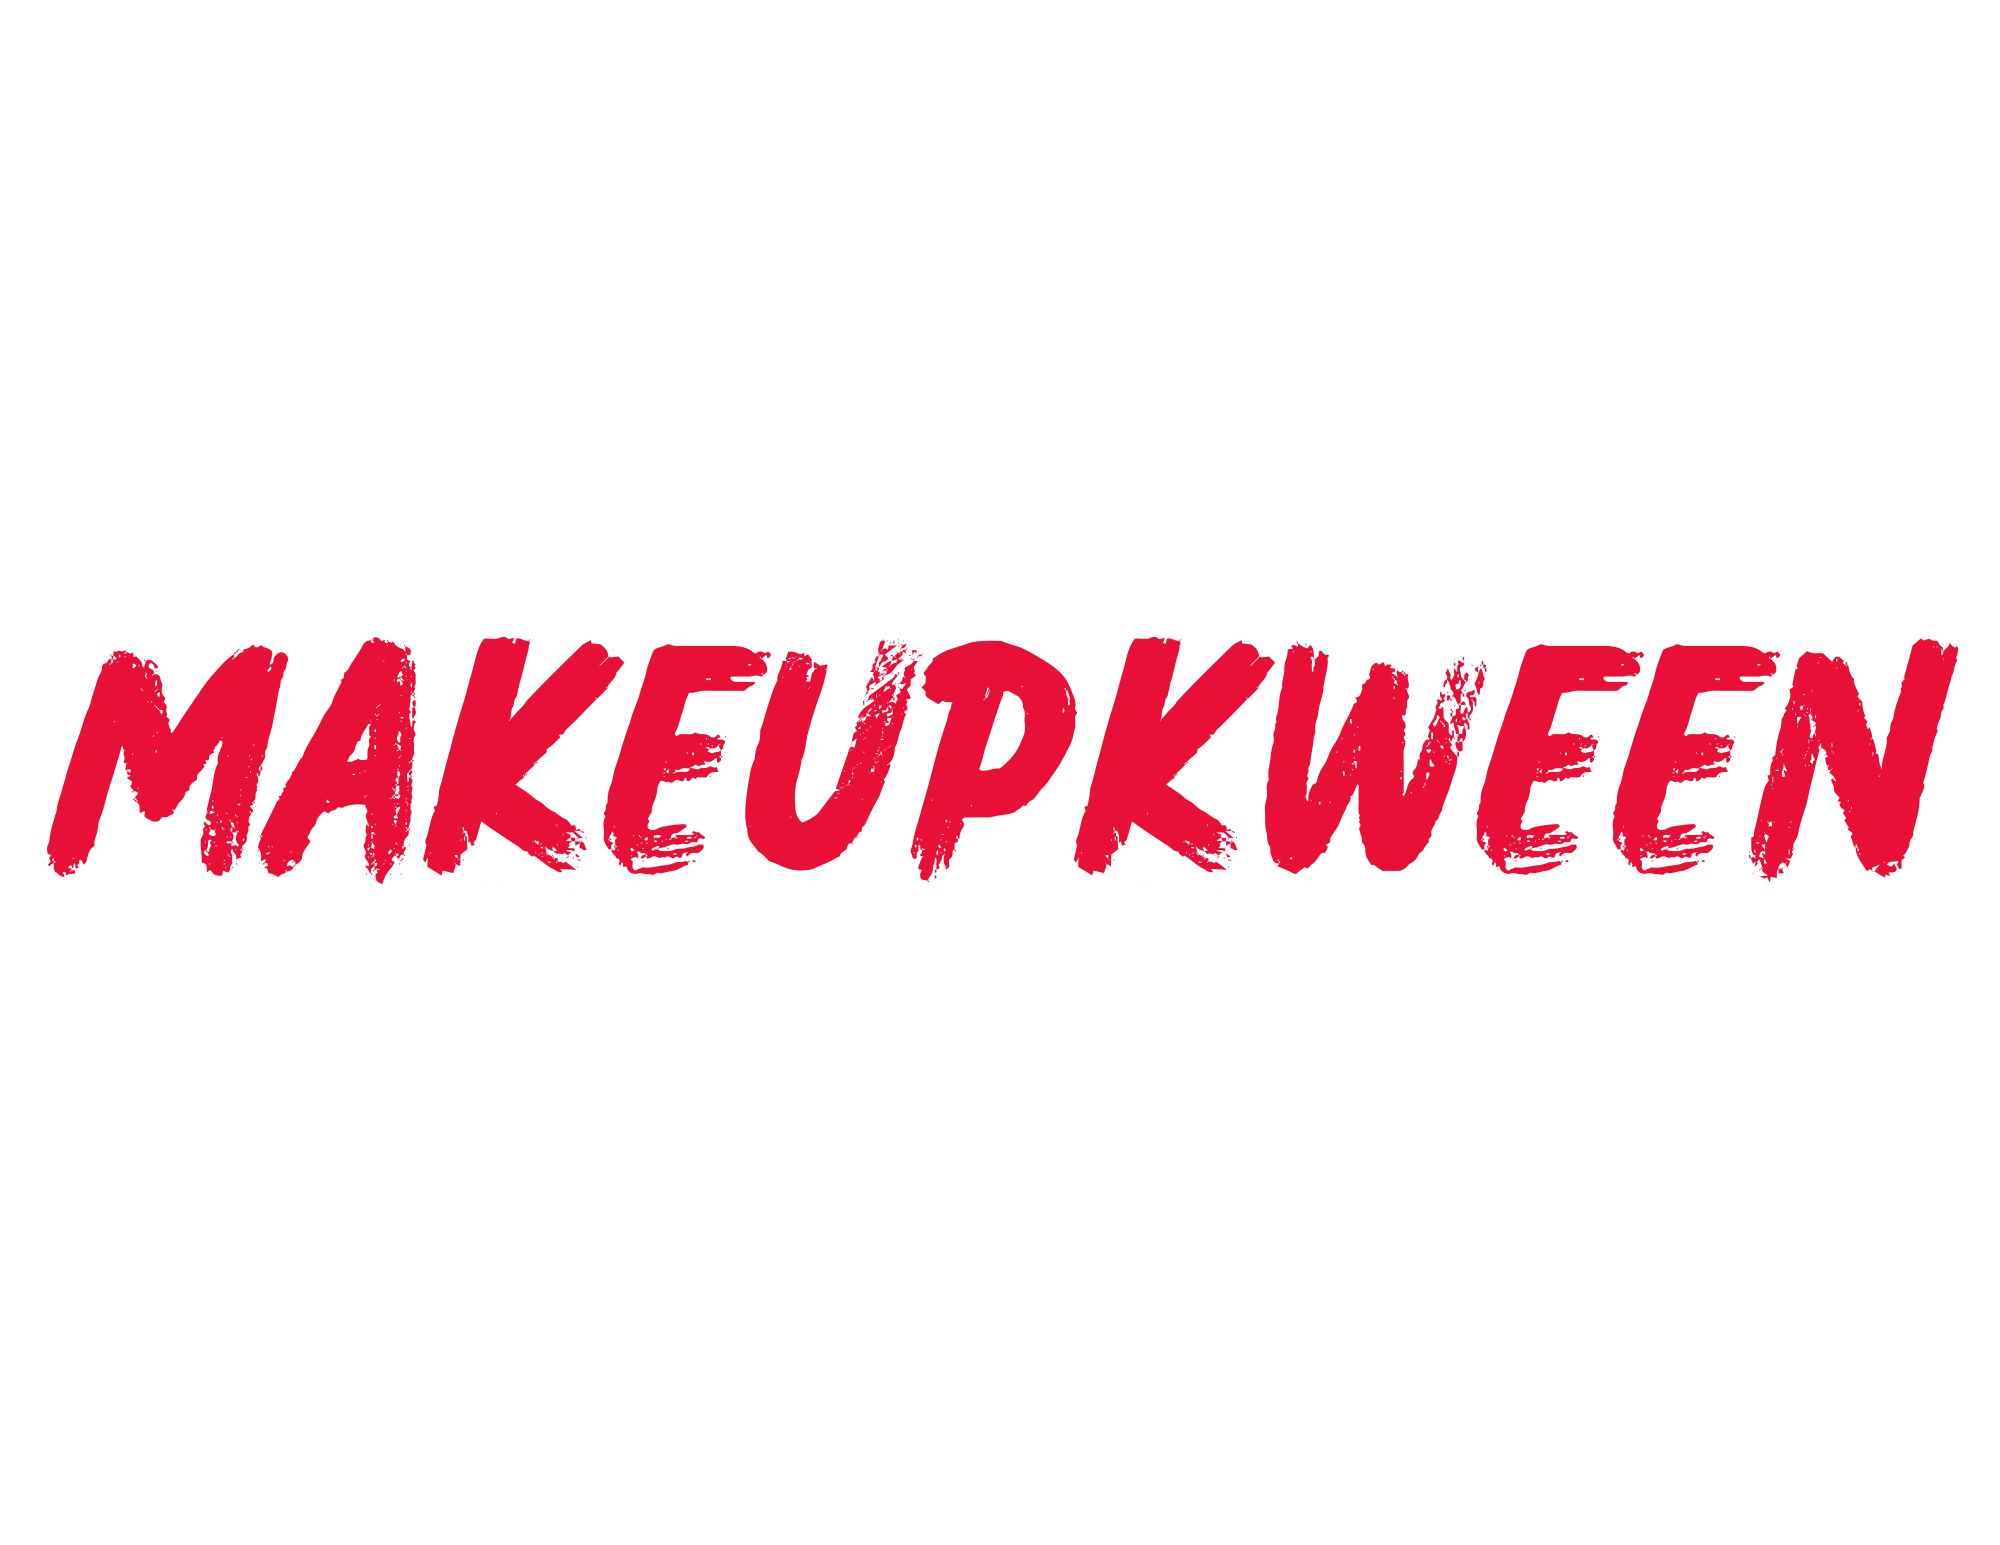 MakeupKween